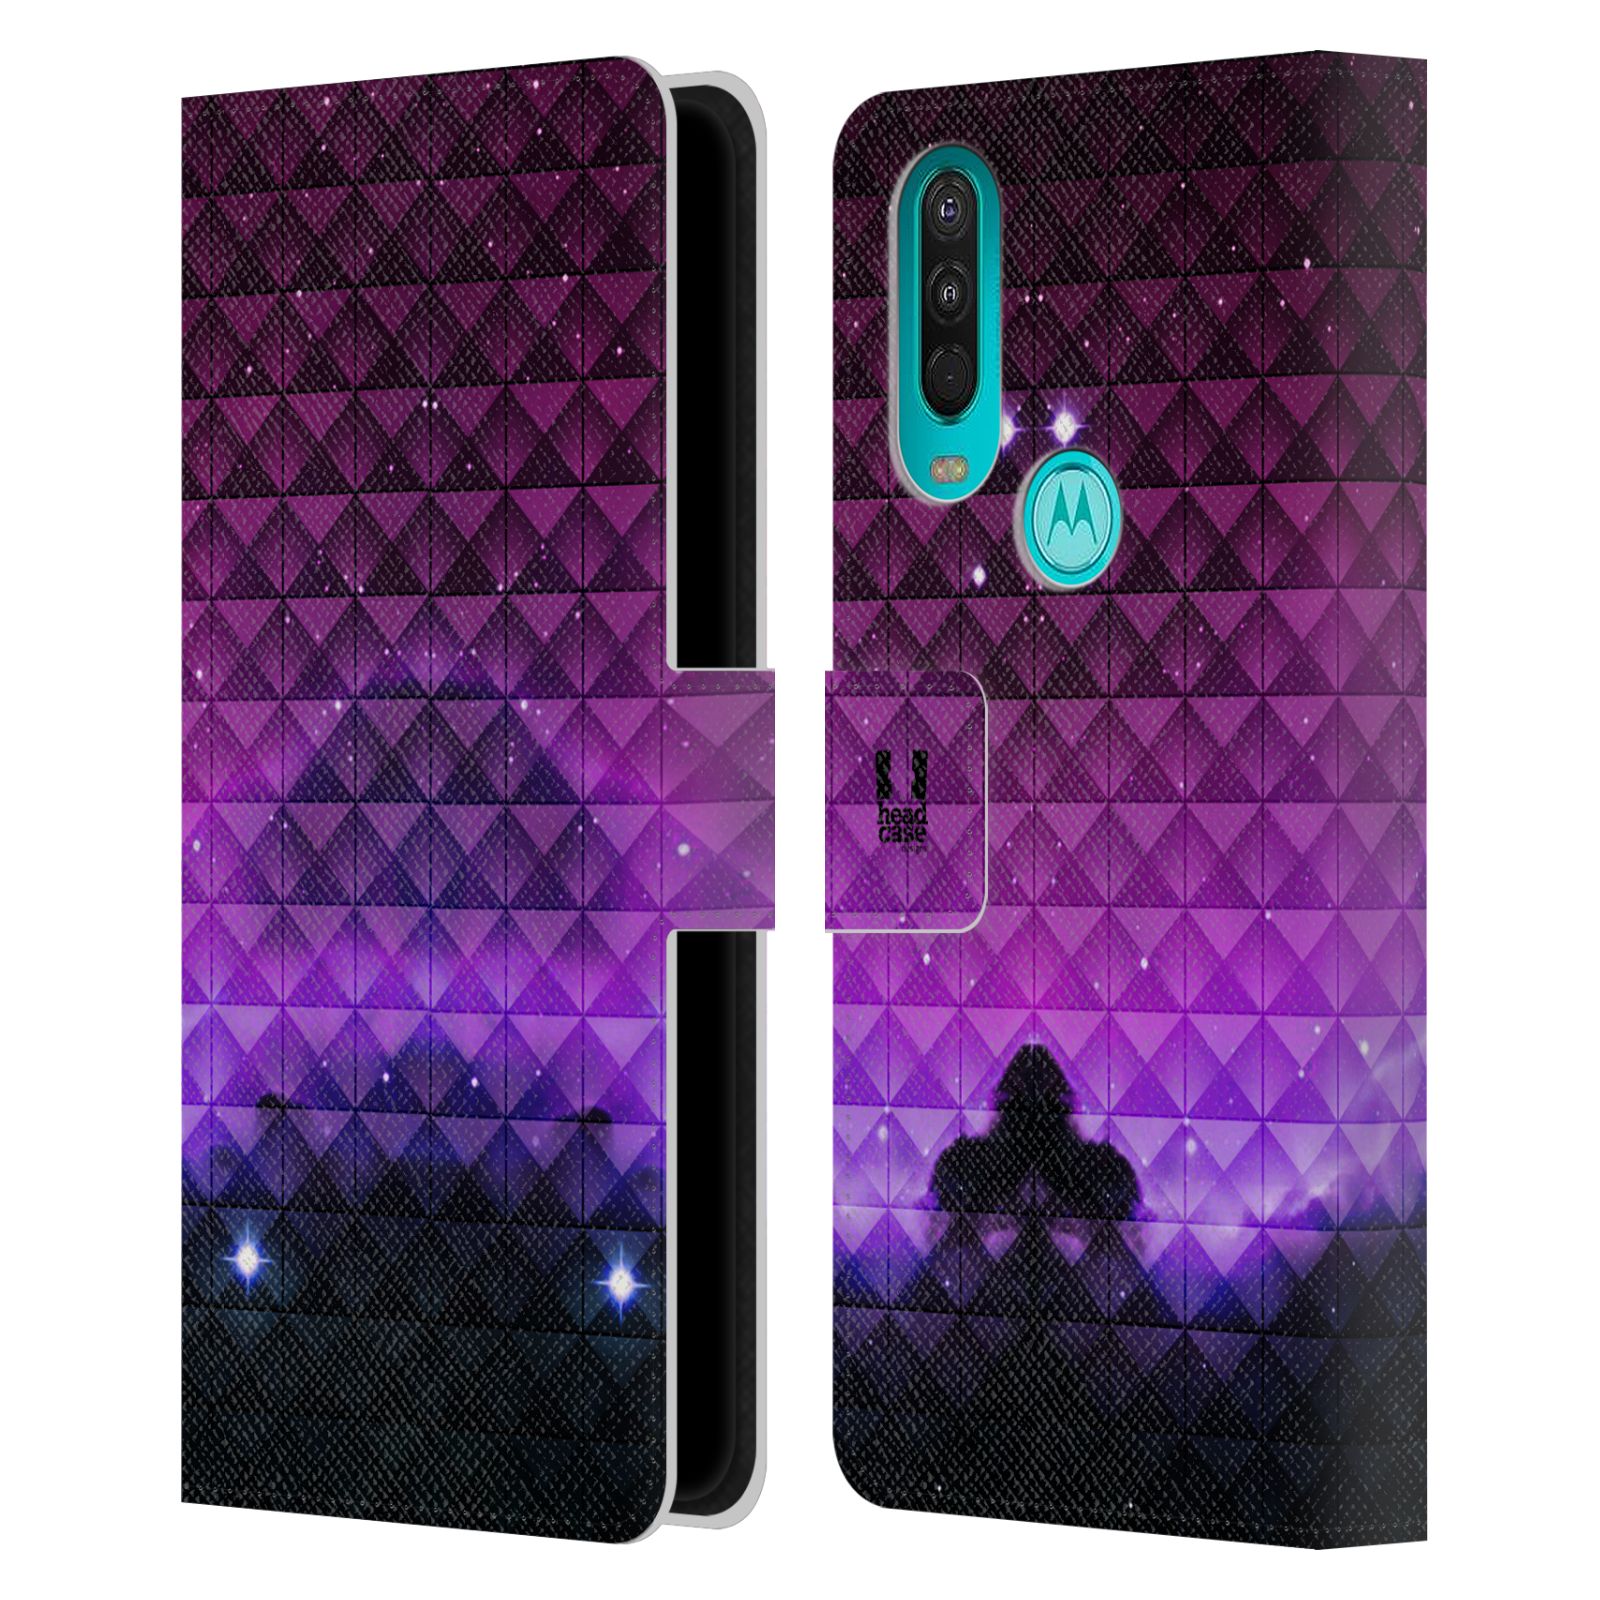 Pouzdro HEAD CASE na mobil Motorola One Action barevná vesmírná mlhovina fialová a černá